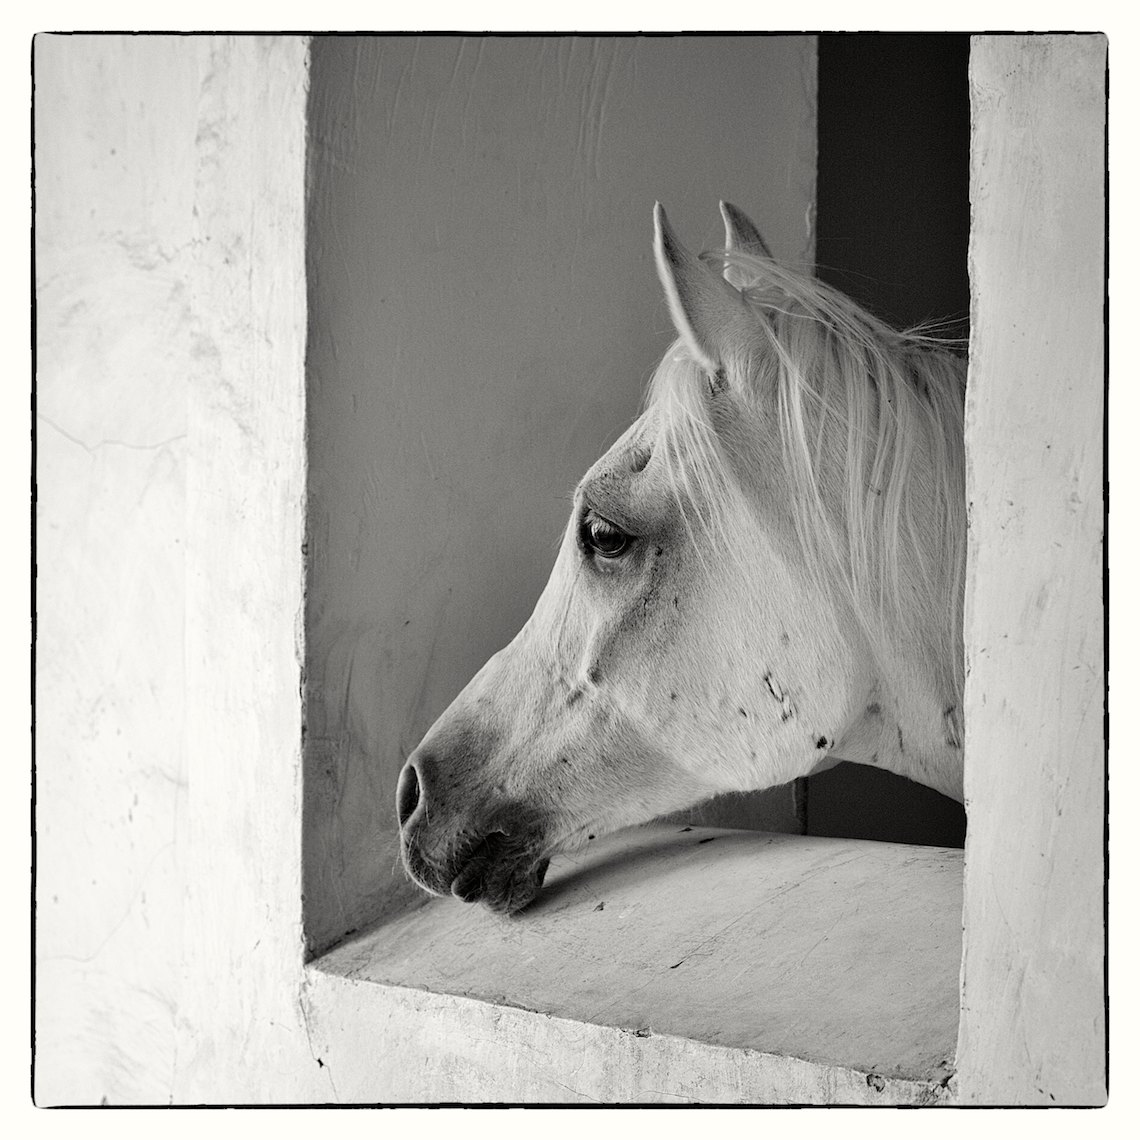 Arabian horse, Souq Waqif